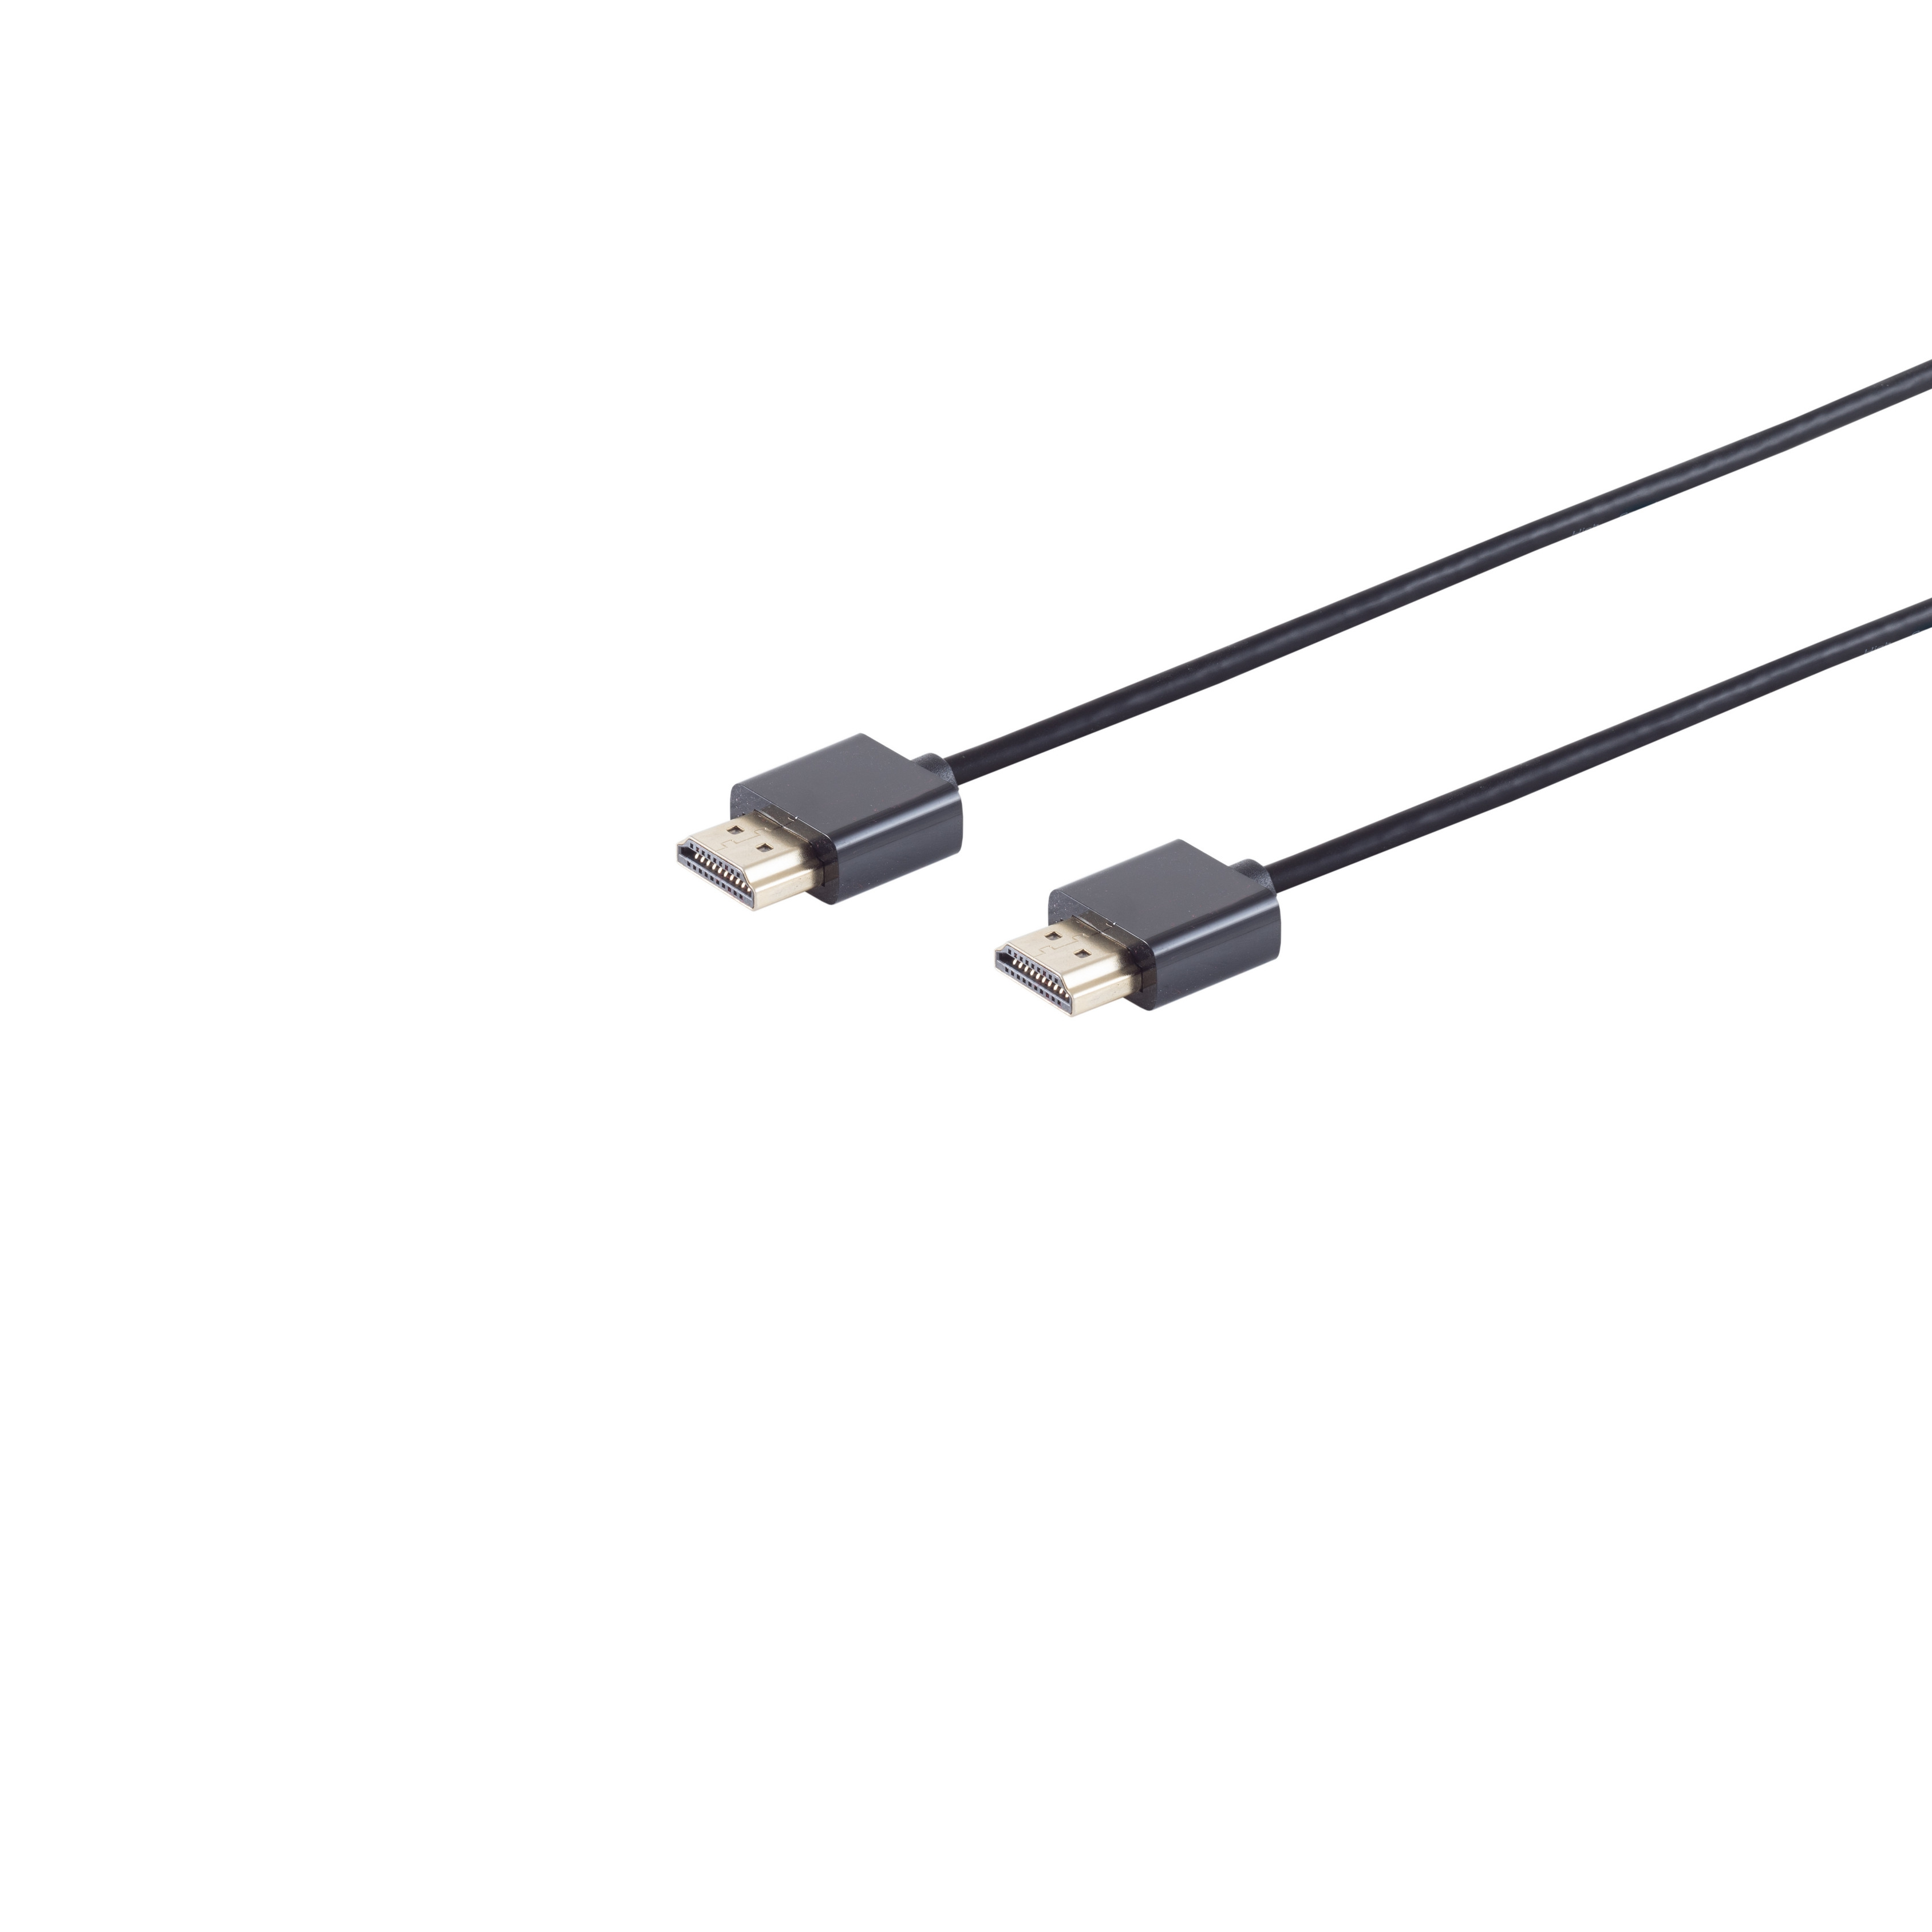 S/CONN MAXIMUM CONNECTIVITY dünn A-Stecker Kabel / HDMI extra 1,5m A-Stecker HDMI HDMI